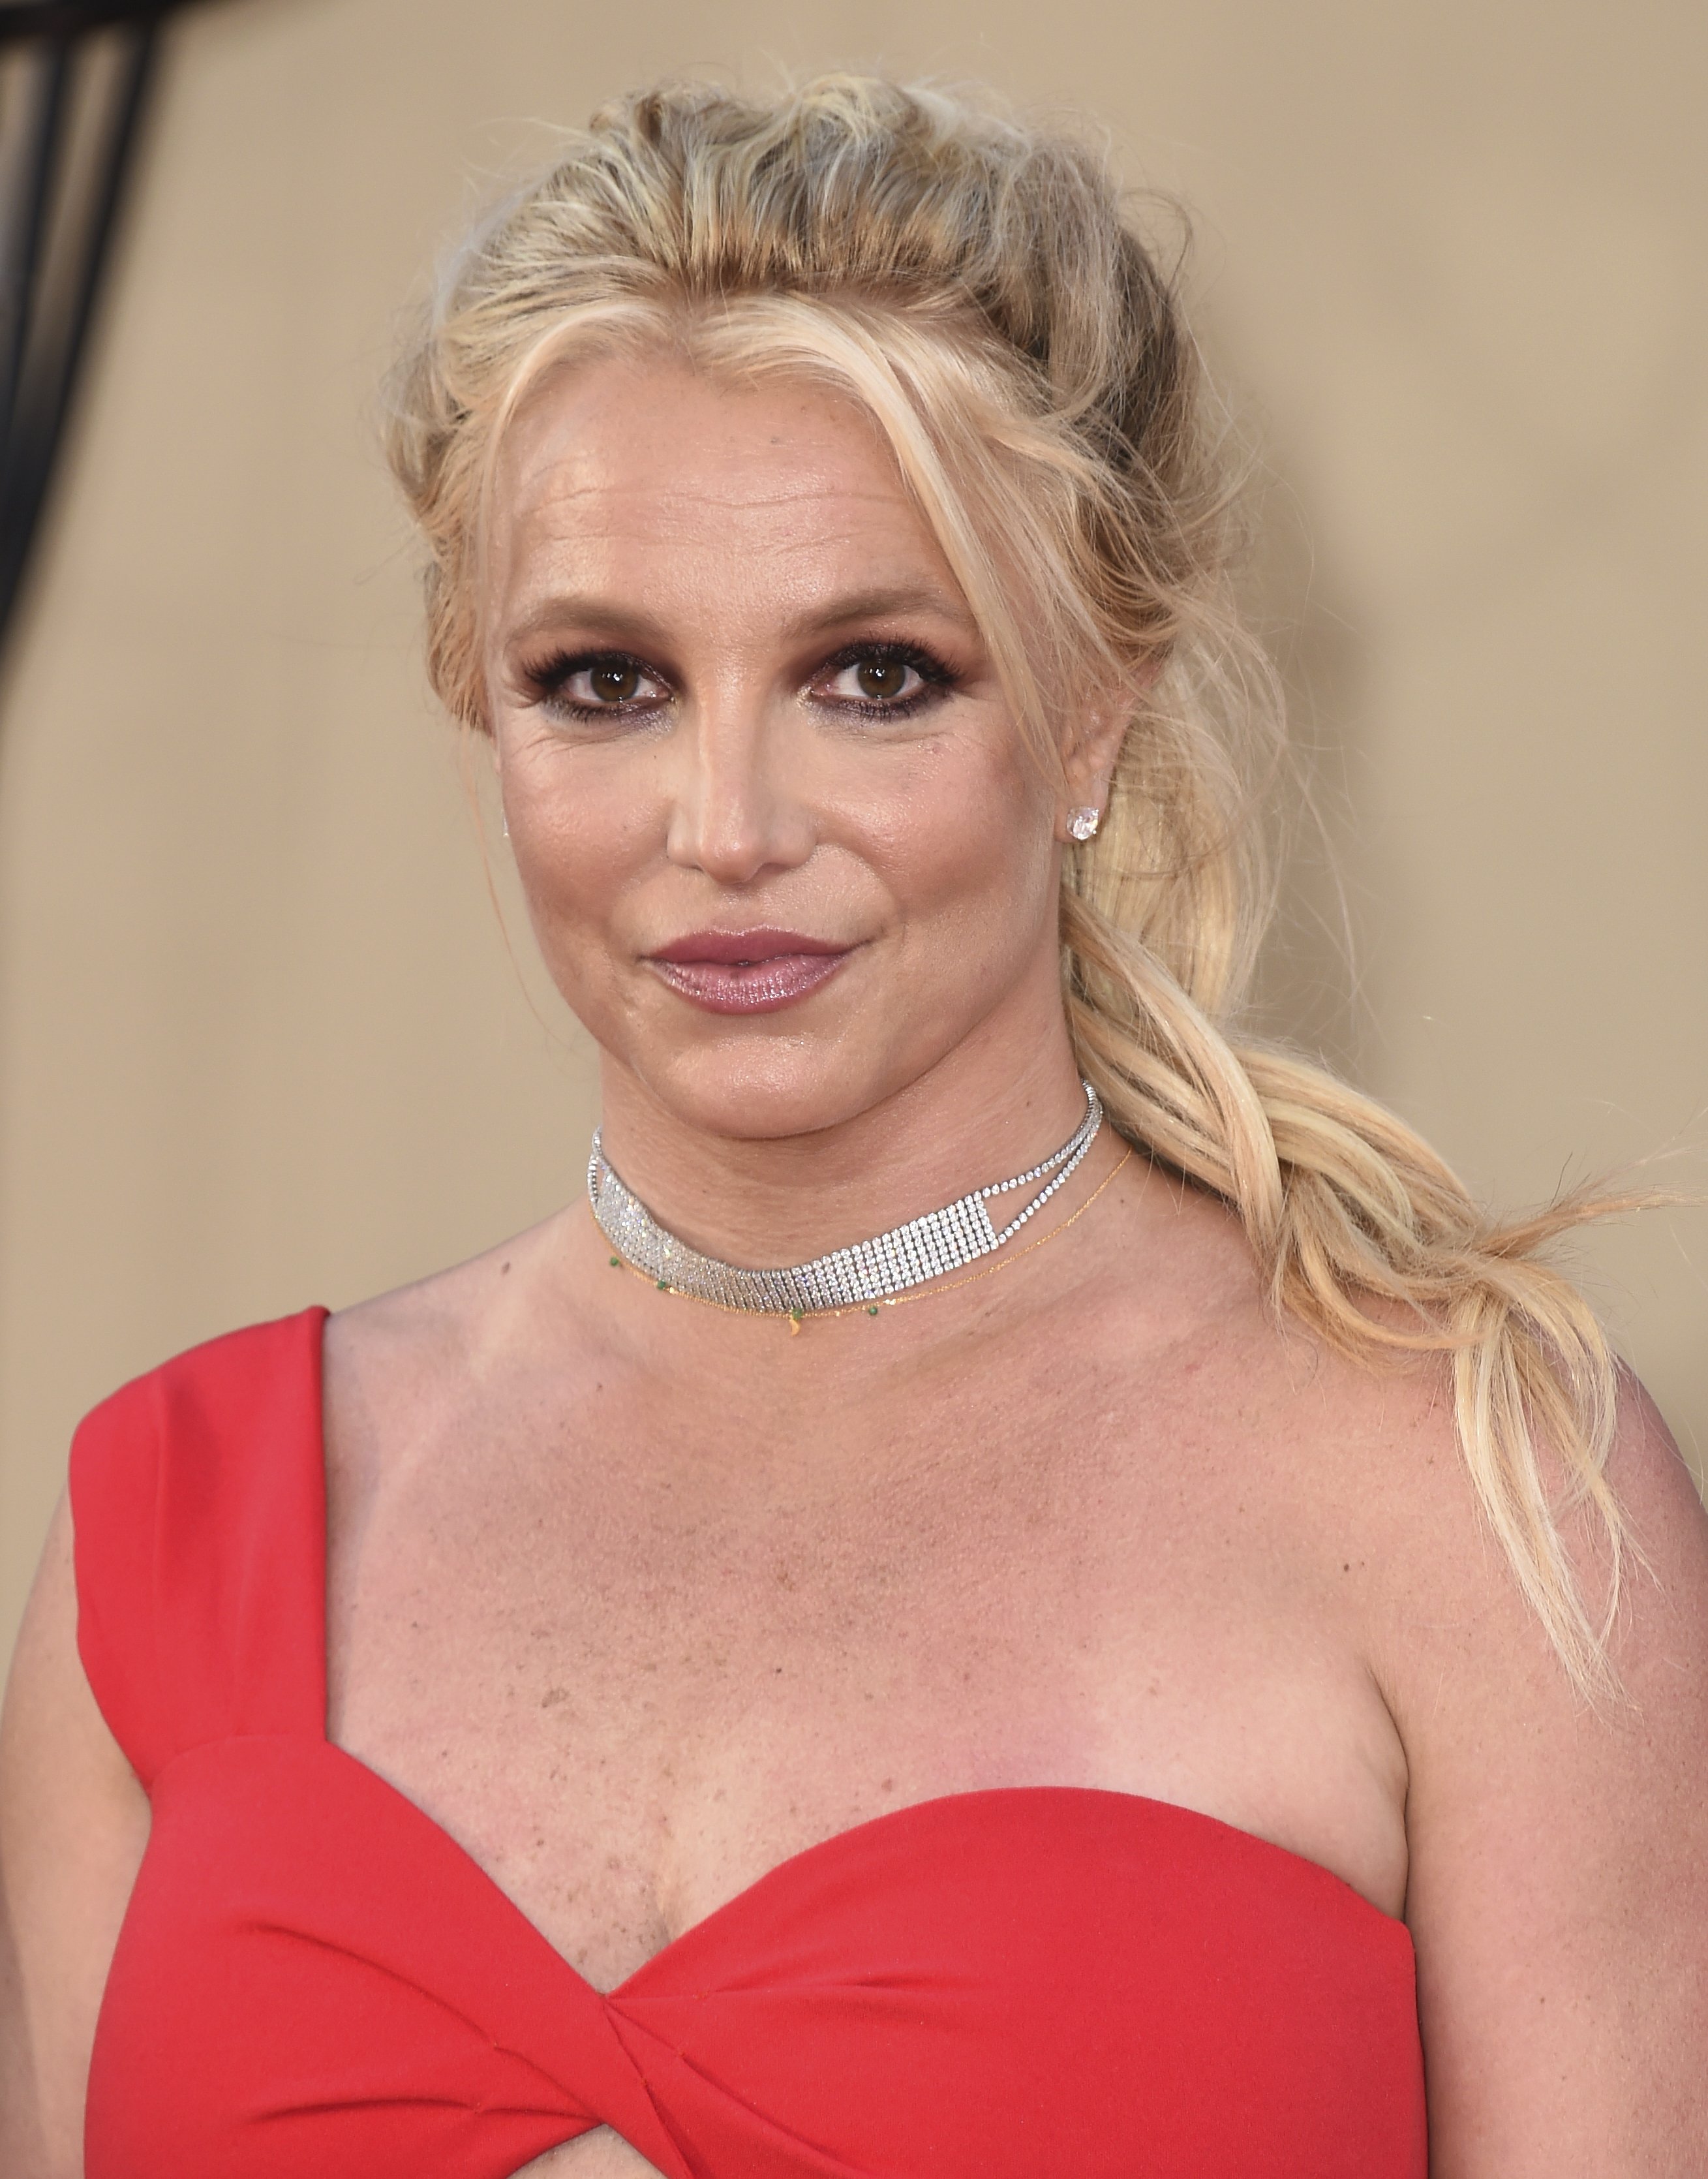 #FreeBritney denuncia el drama de Britney Spears, incapacitada legalmente